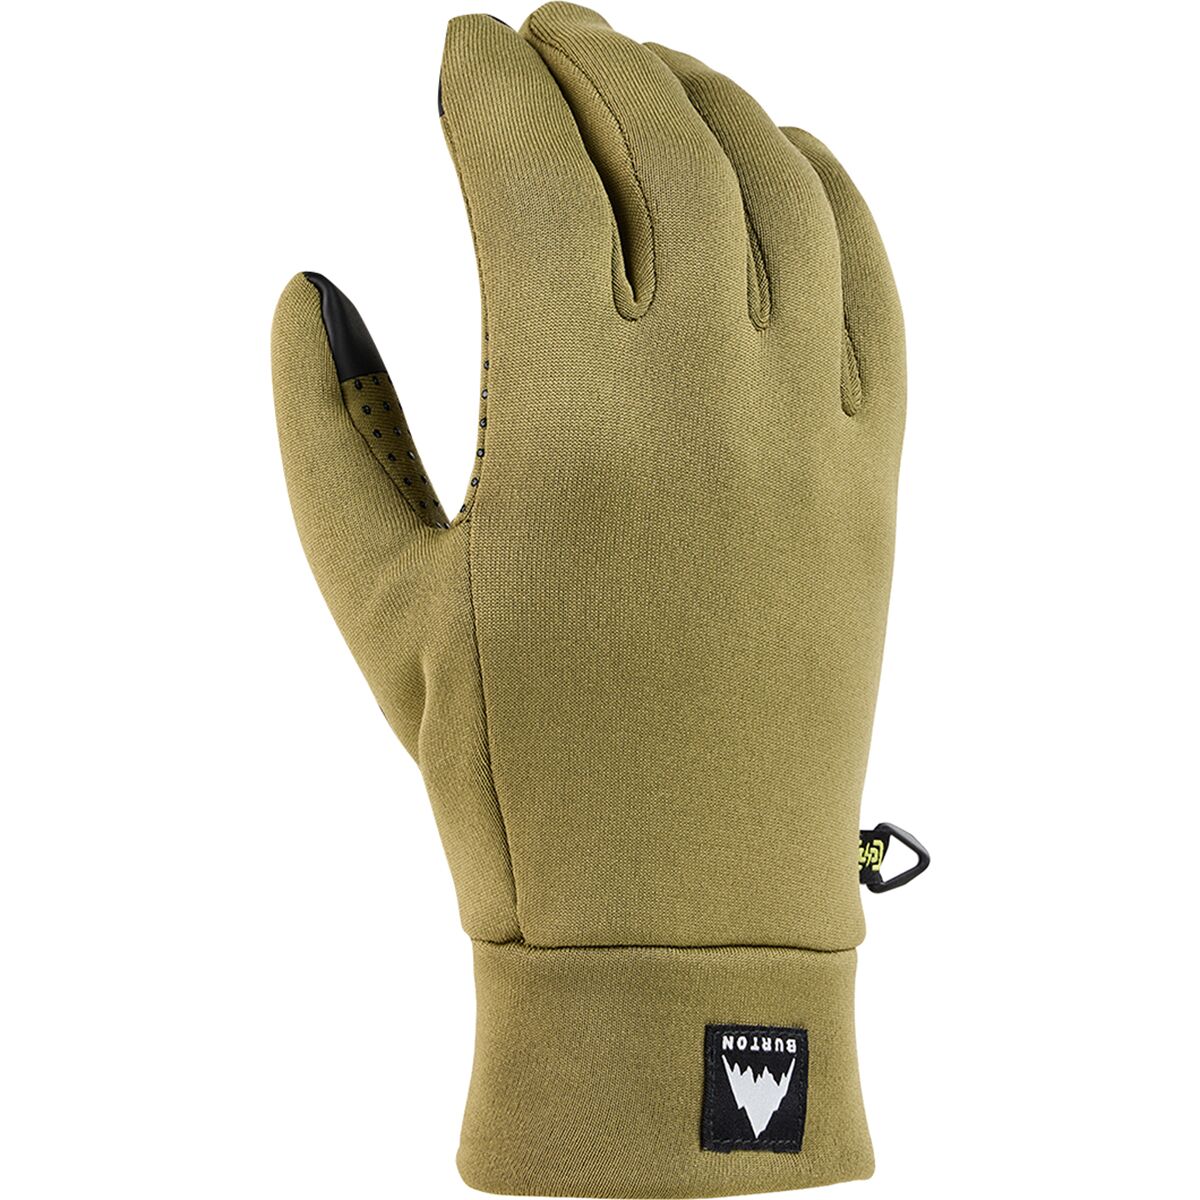 Burton Powerstretch Liner Glove - Men's